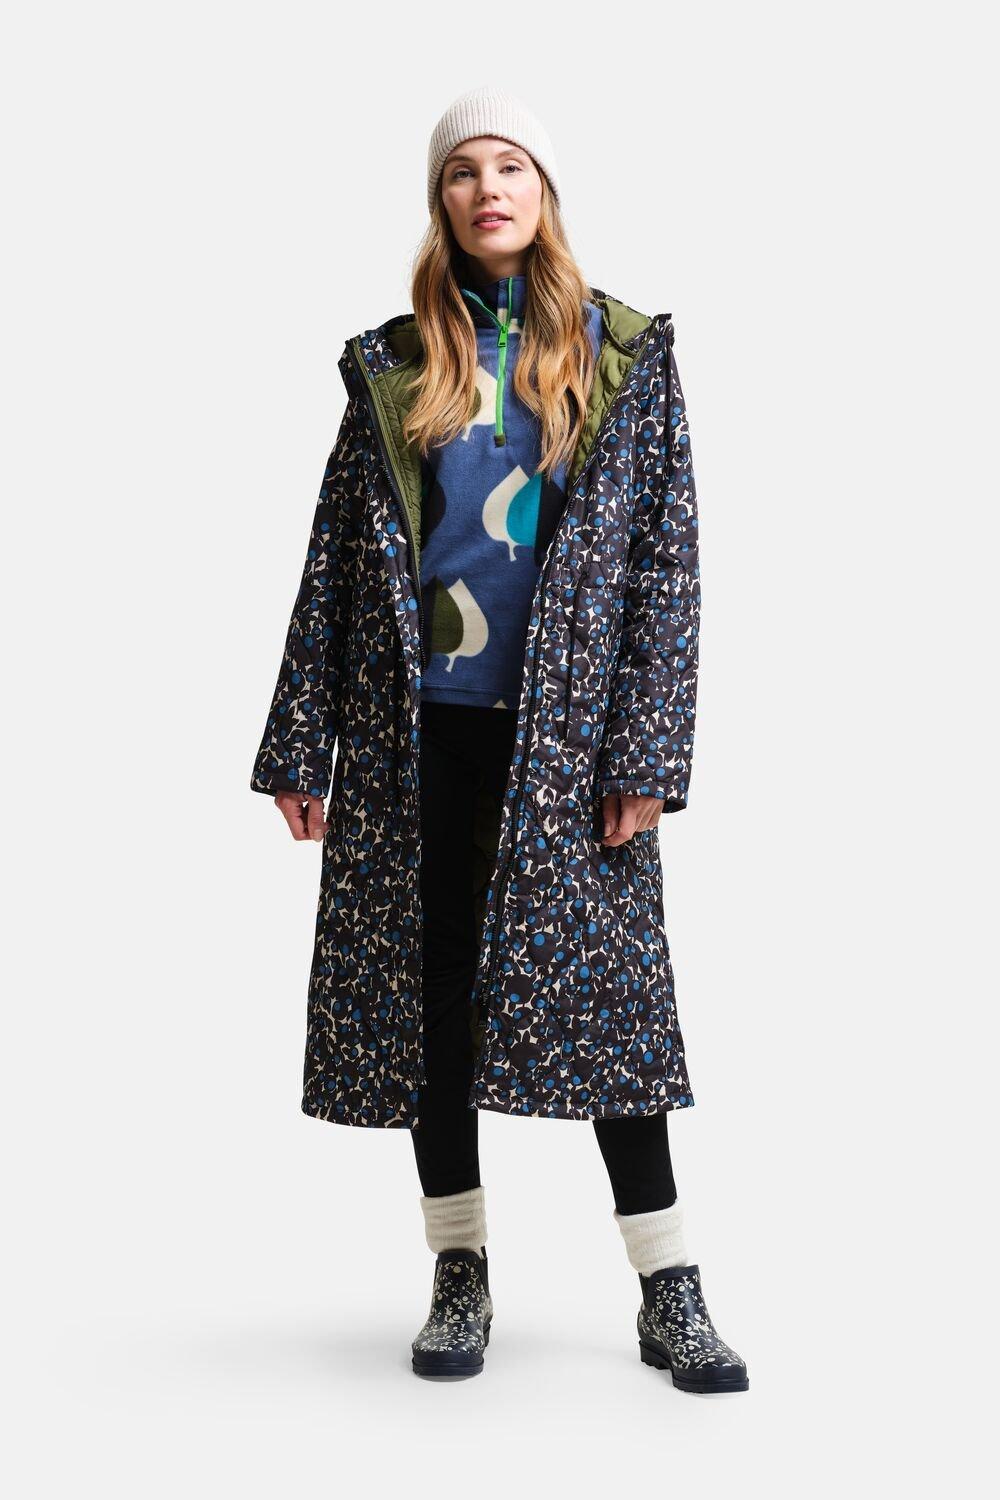 Удлиненная стеганая куртка Orla Kiely Regatta, синий длинное флисовое пальто из смешанной ткани женское backcountry цвет brown sugar tawny orange fired brick